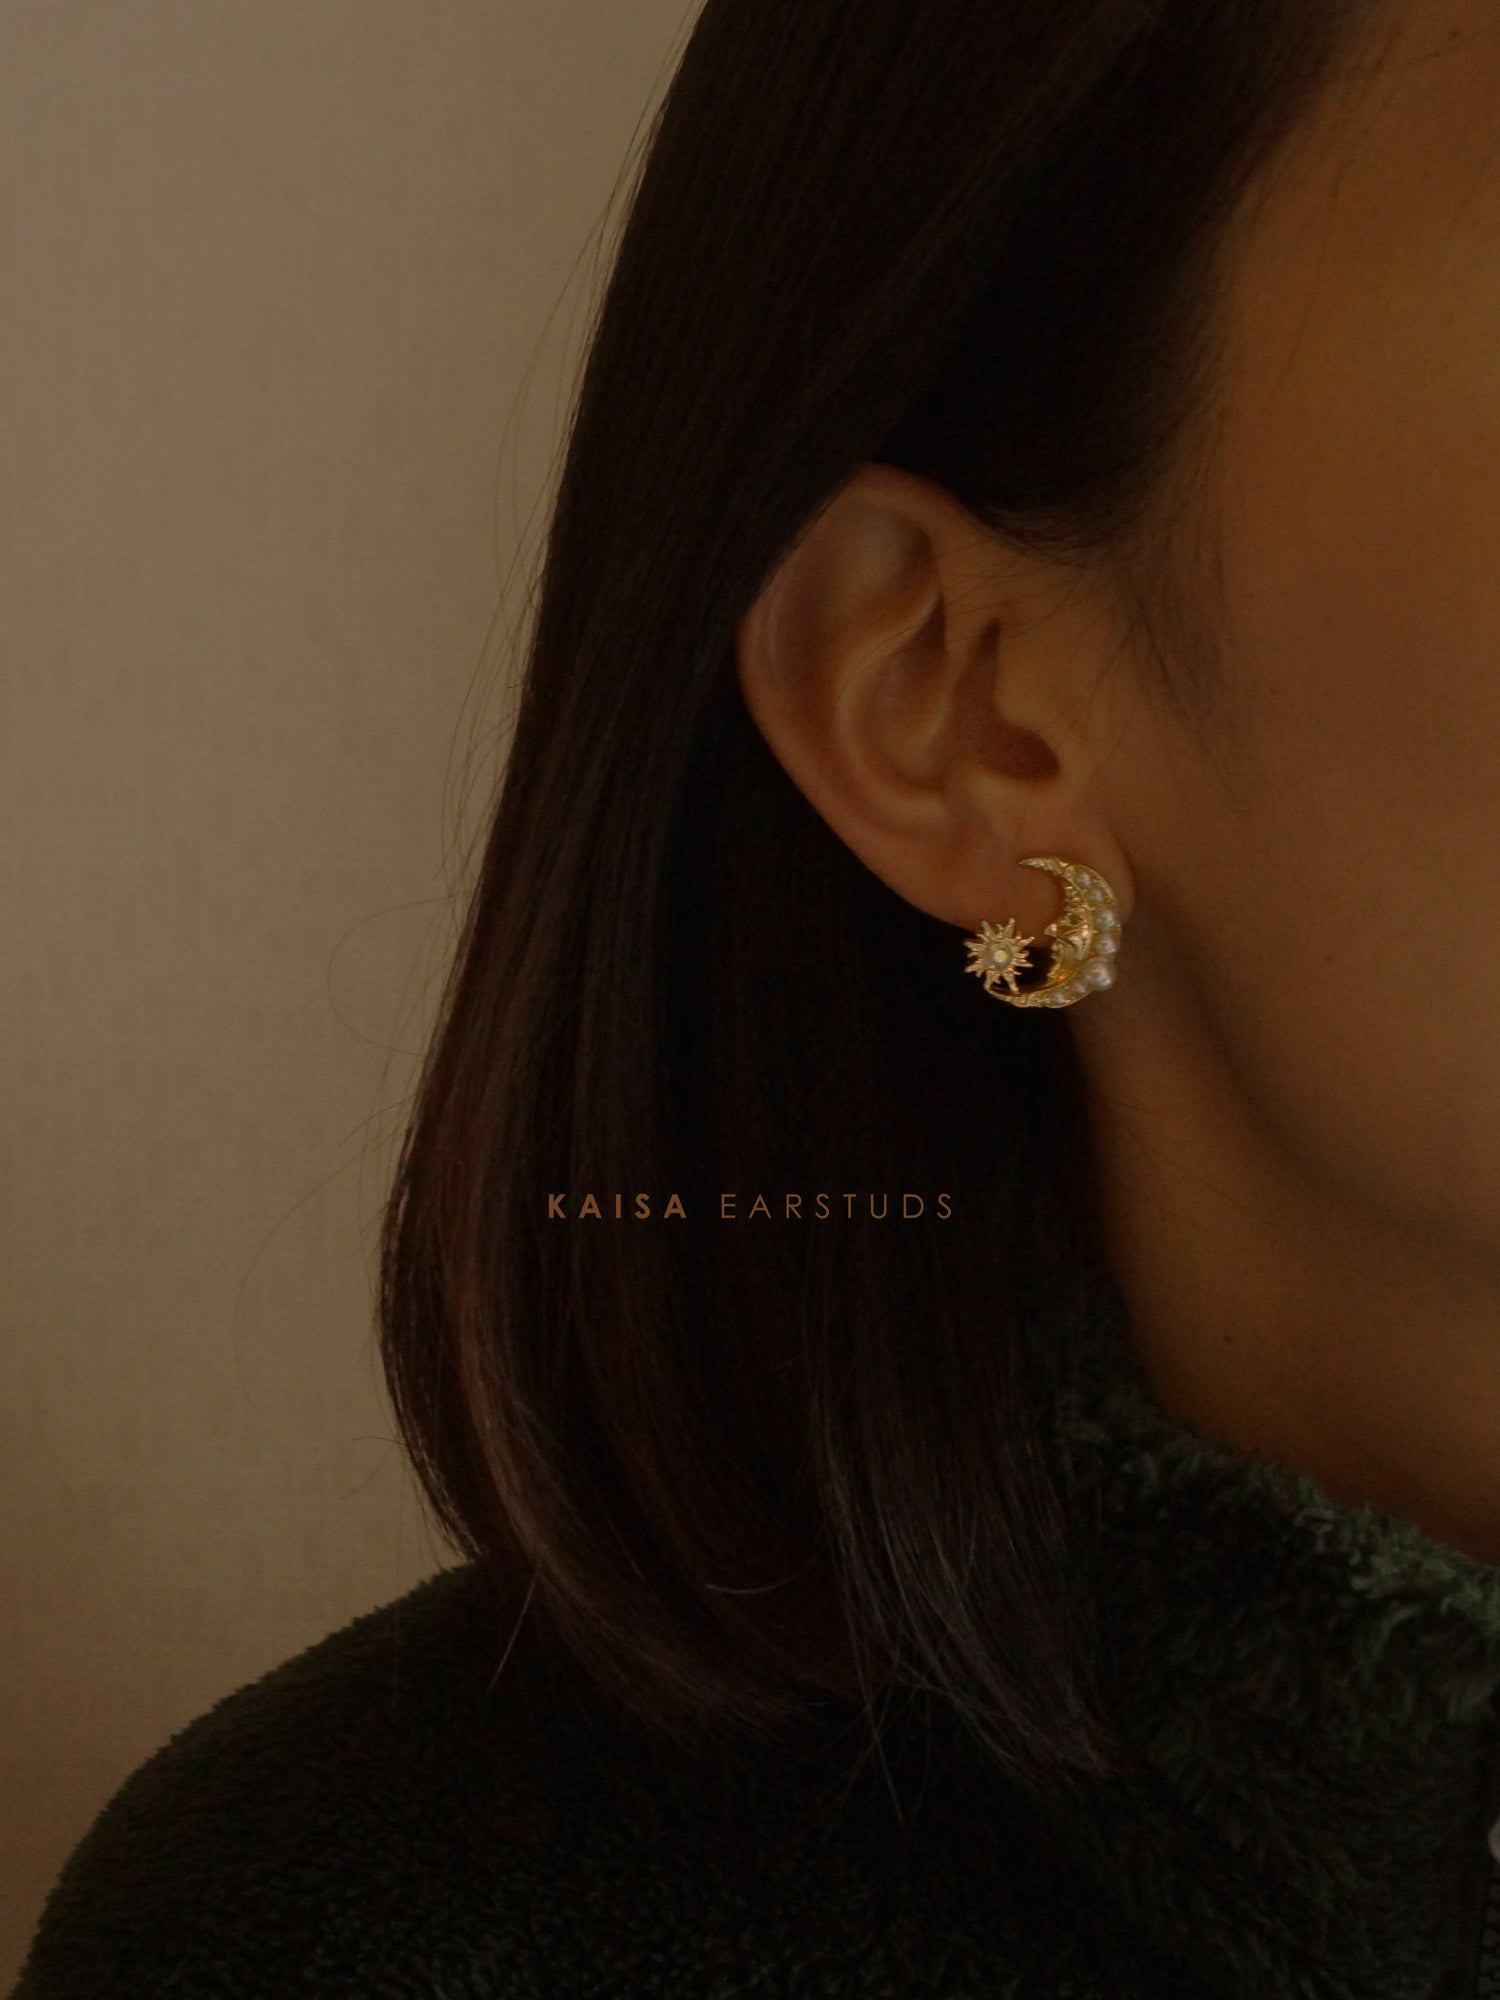 gabi label kaisa earstuds model teaser